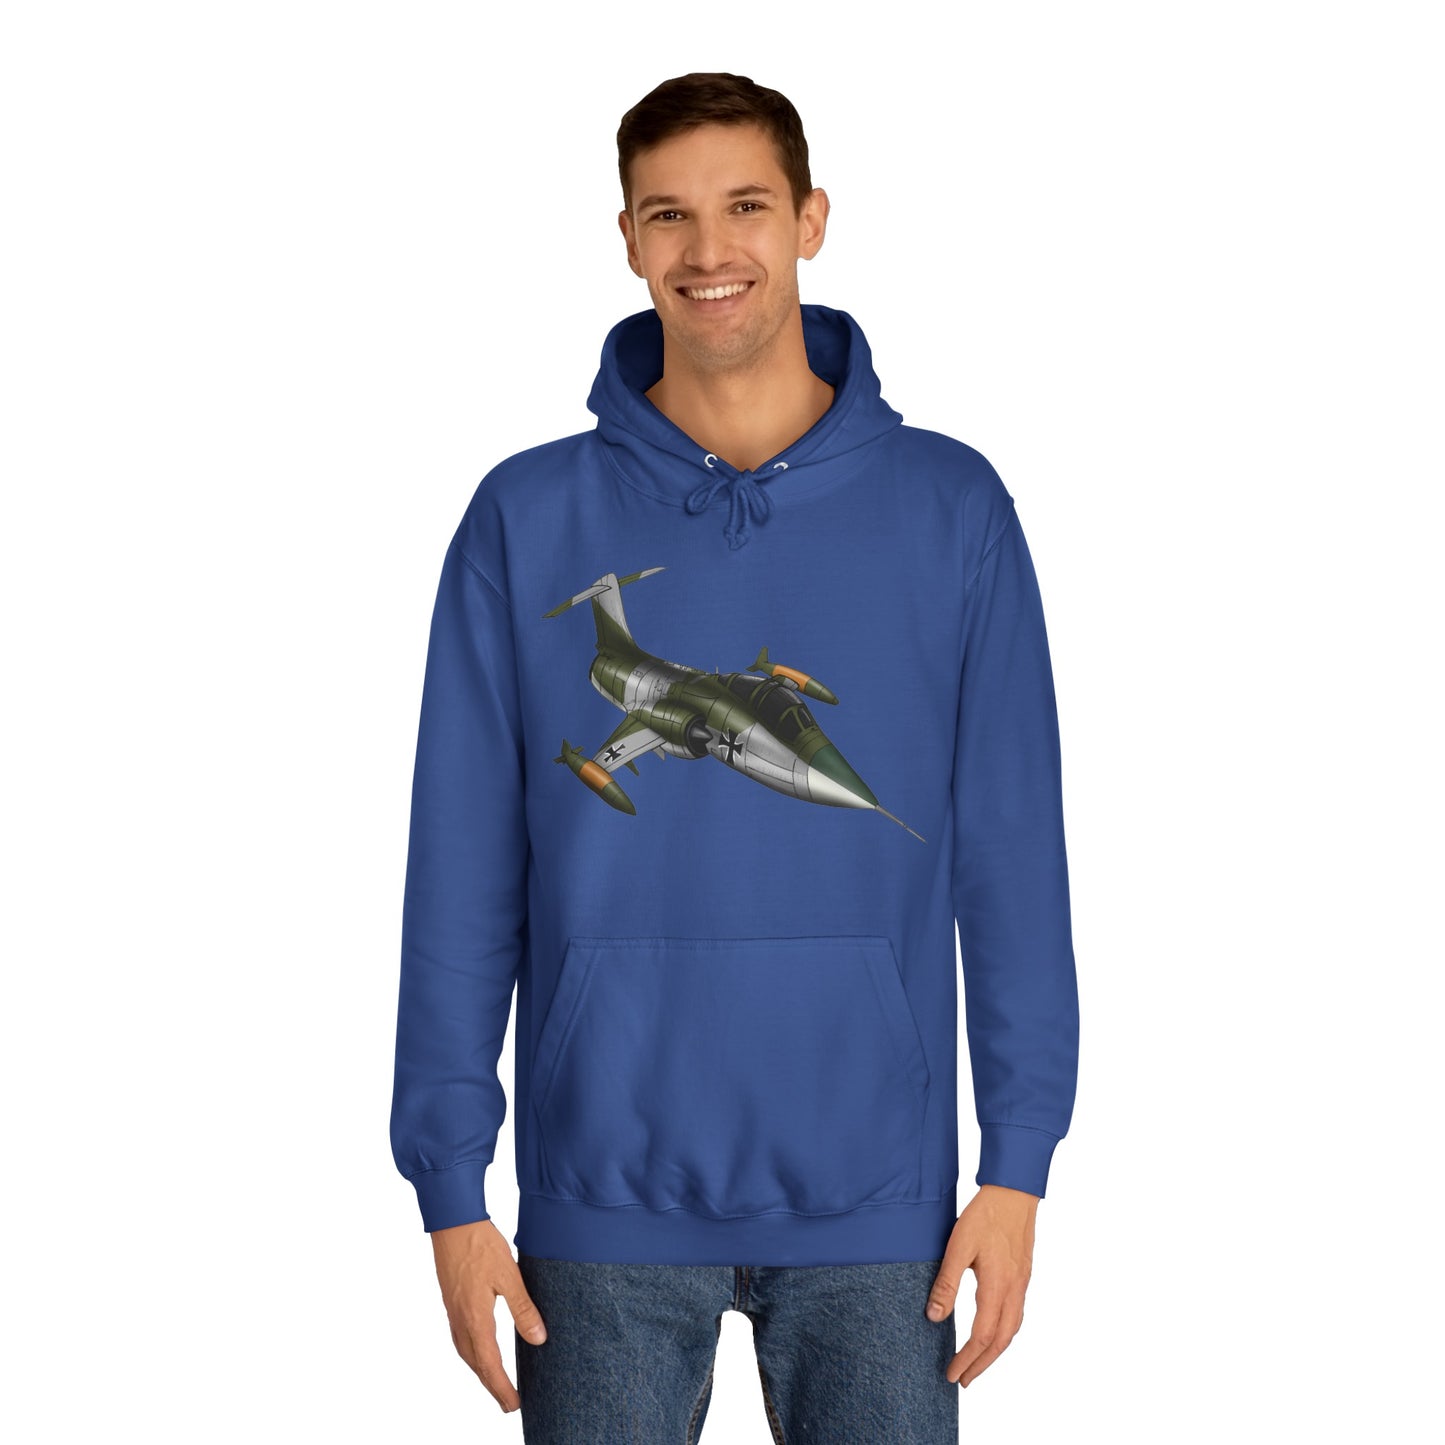 Starfighter Aircraft Design Unisex College Hoodie